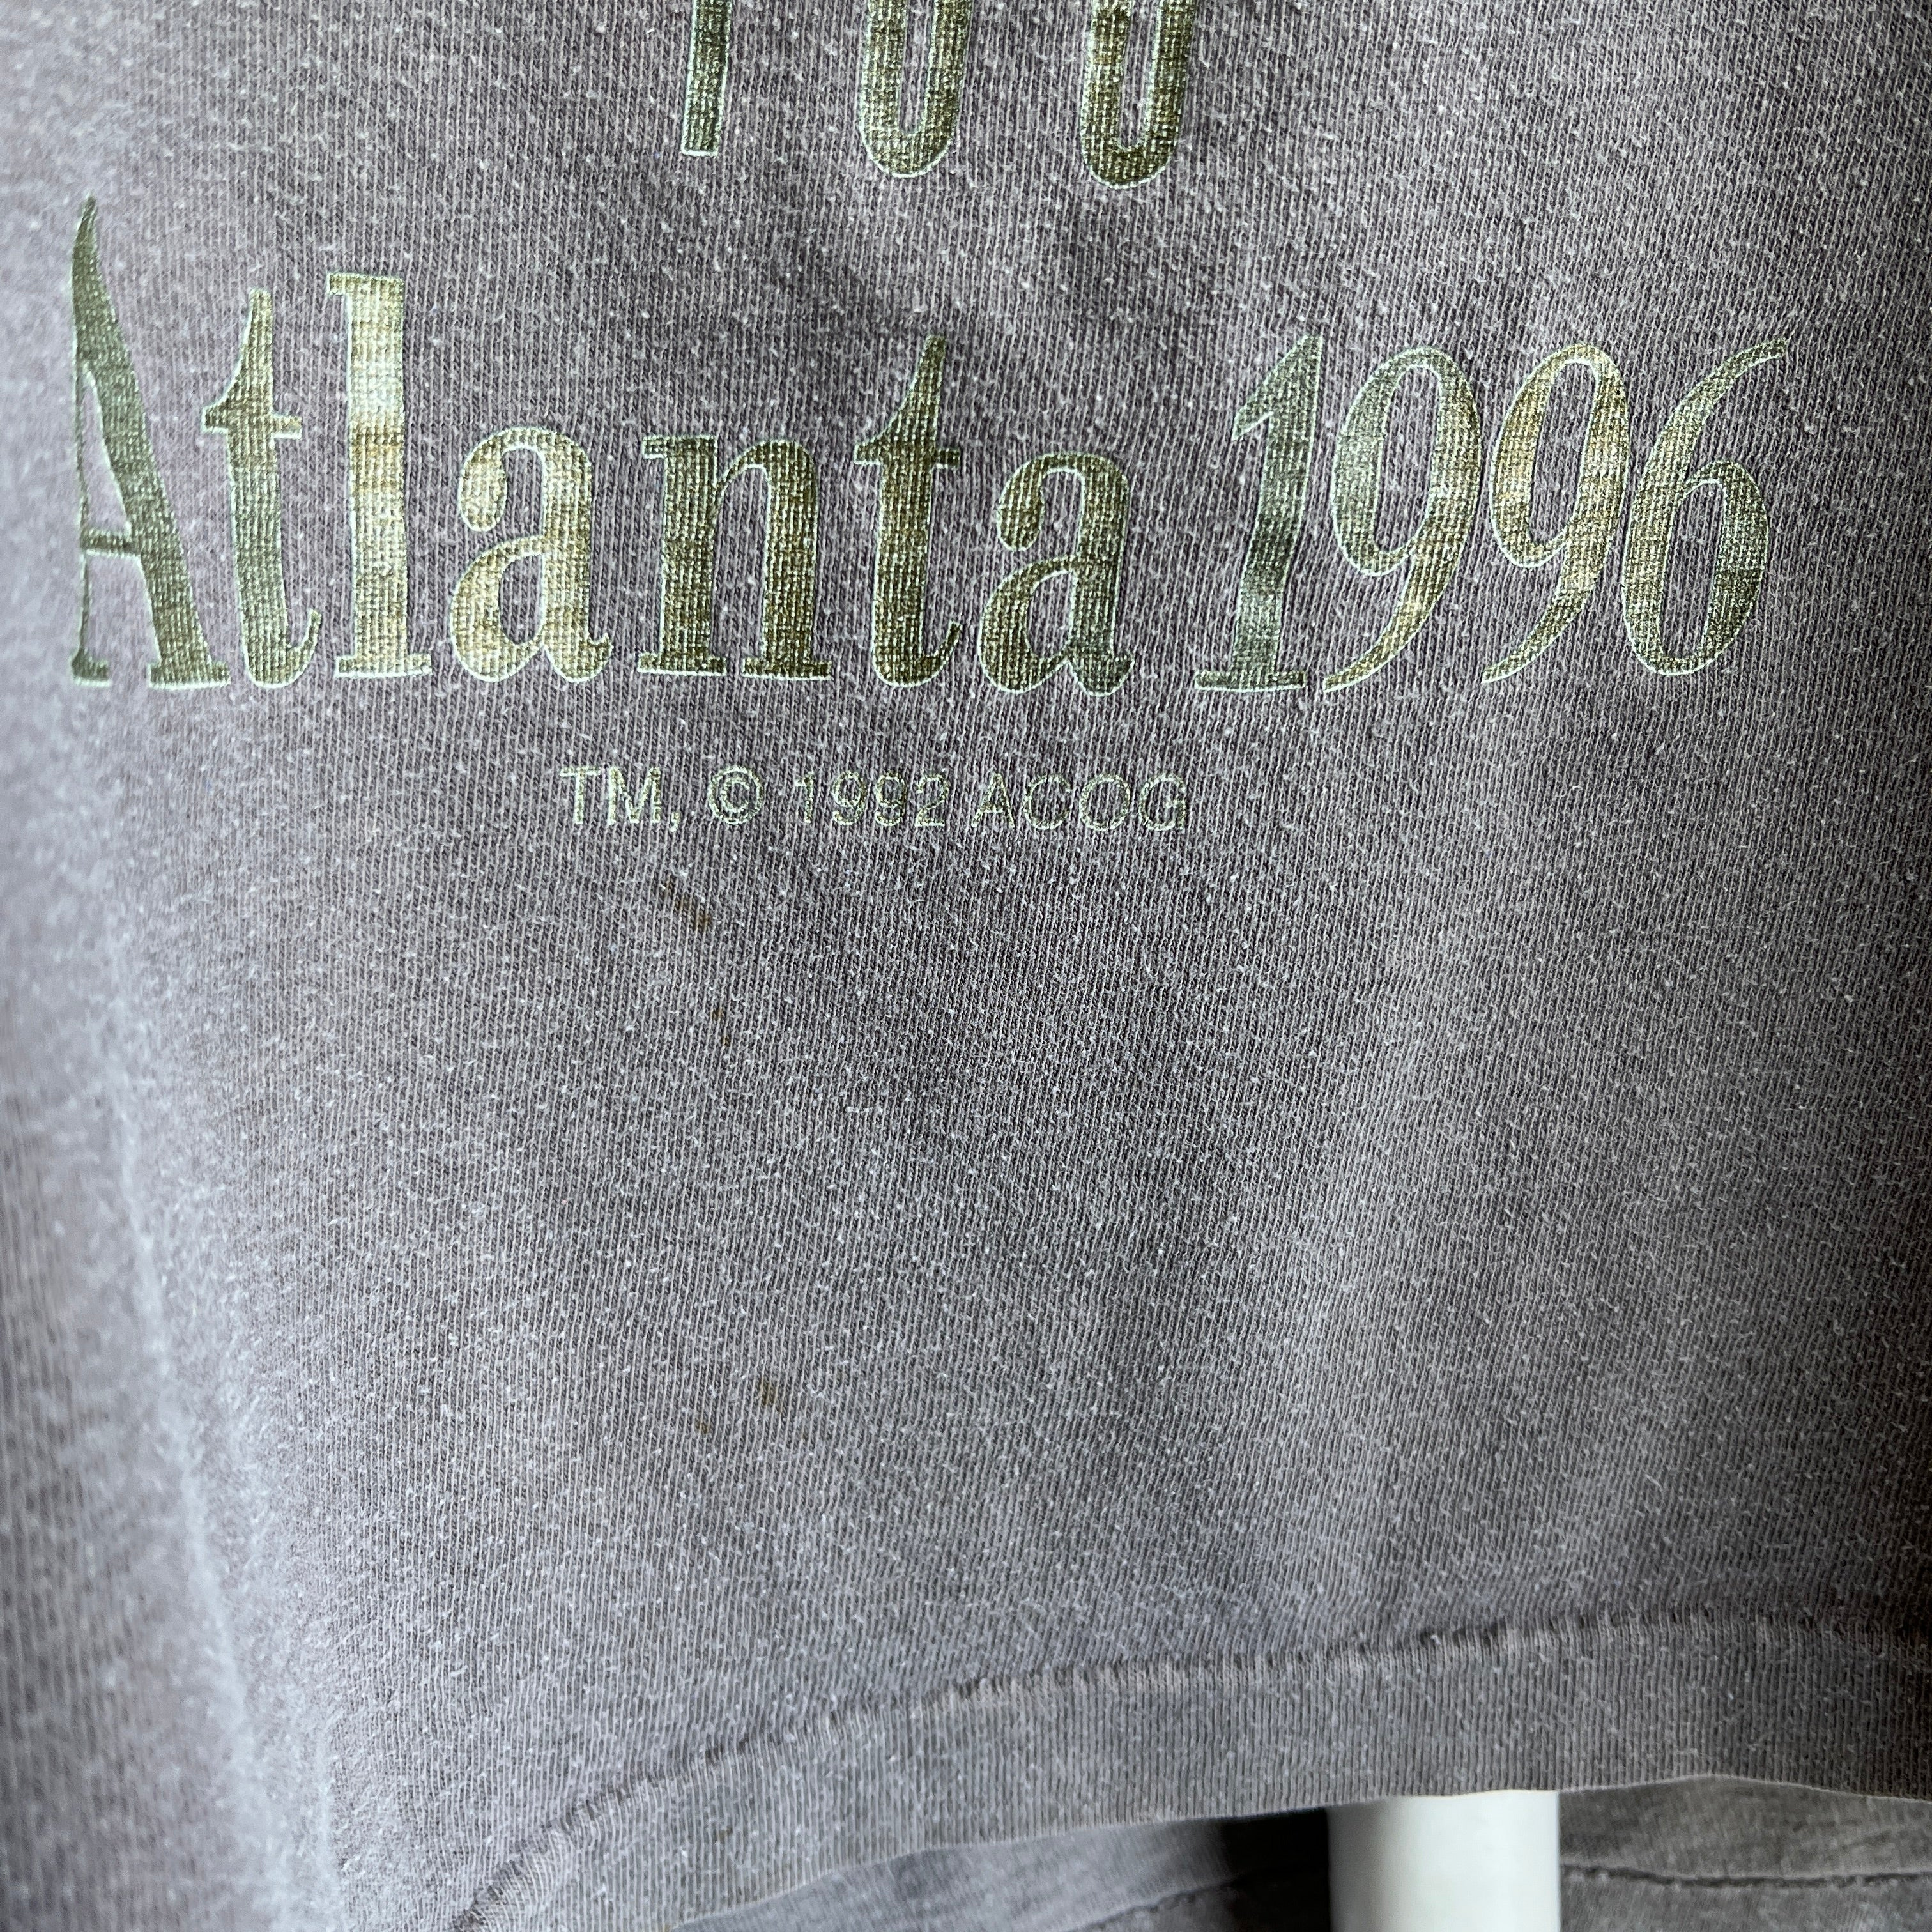 1996 Atlanta Olympic Tank Top